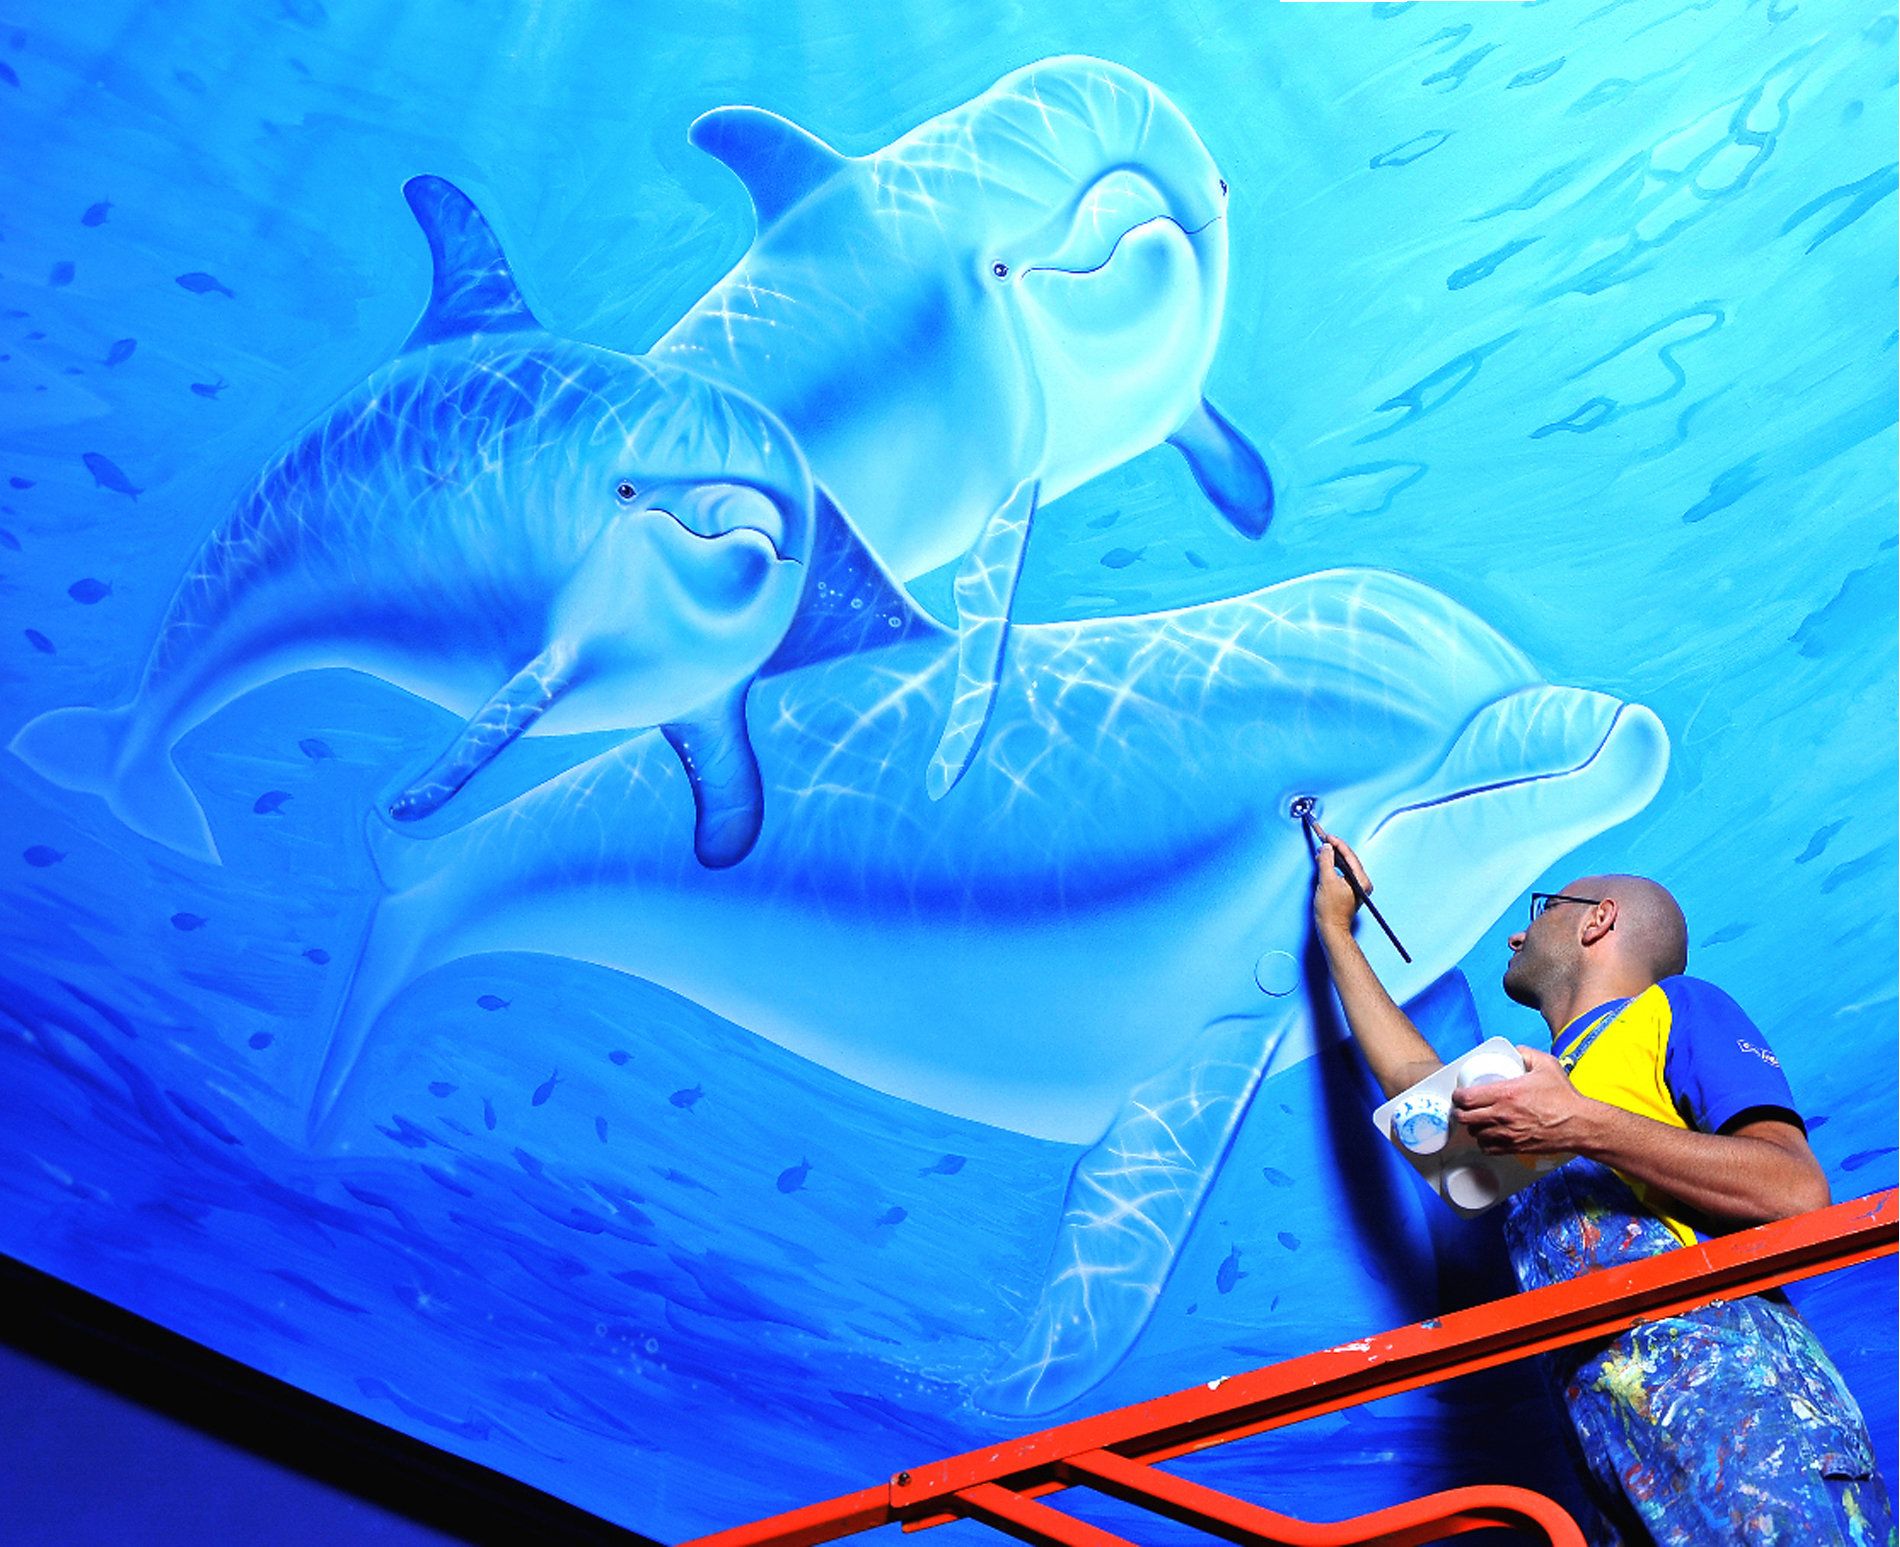 Mural at the Georgia Aquarium in Atlanta